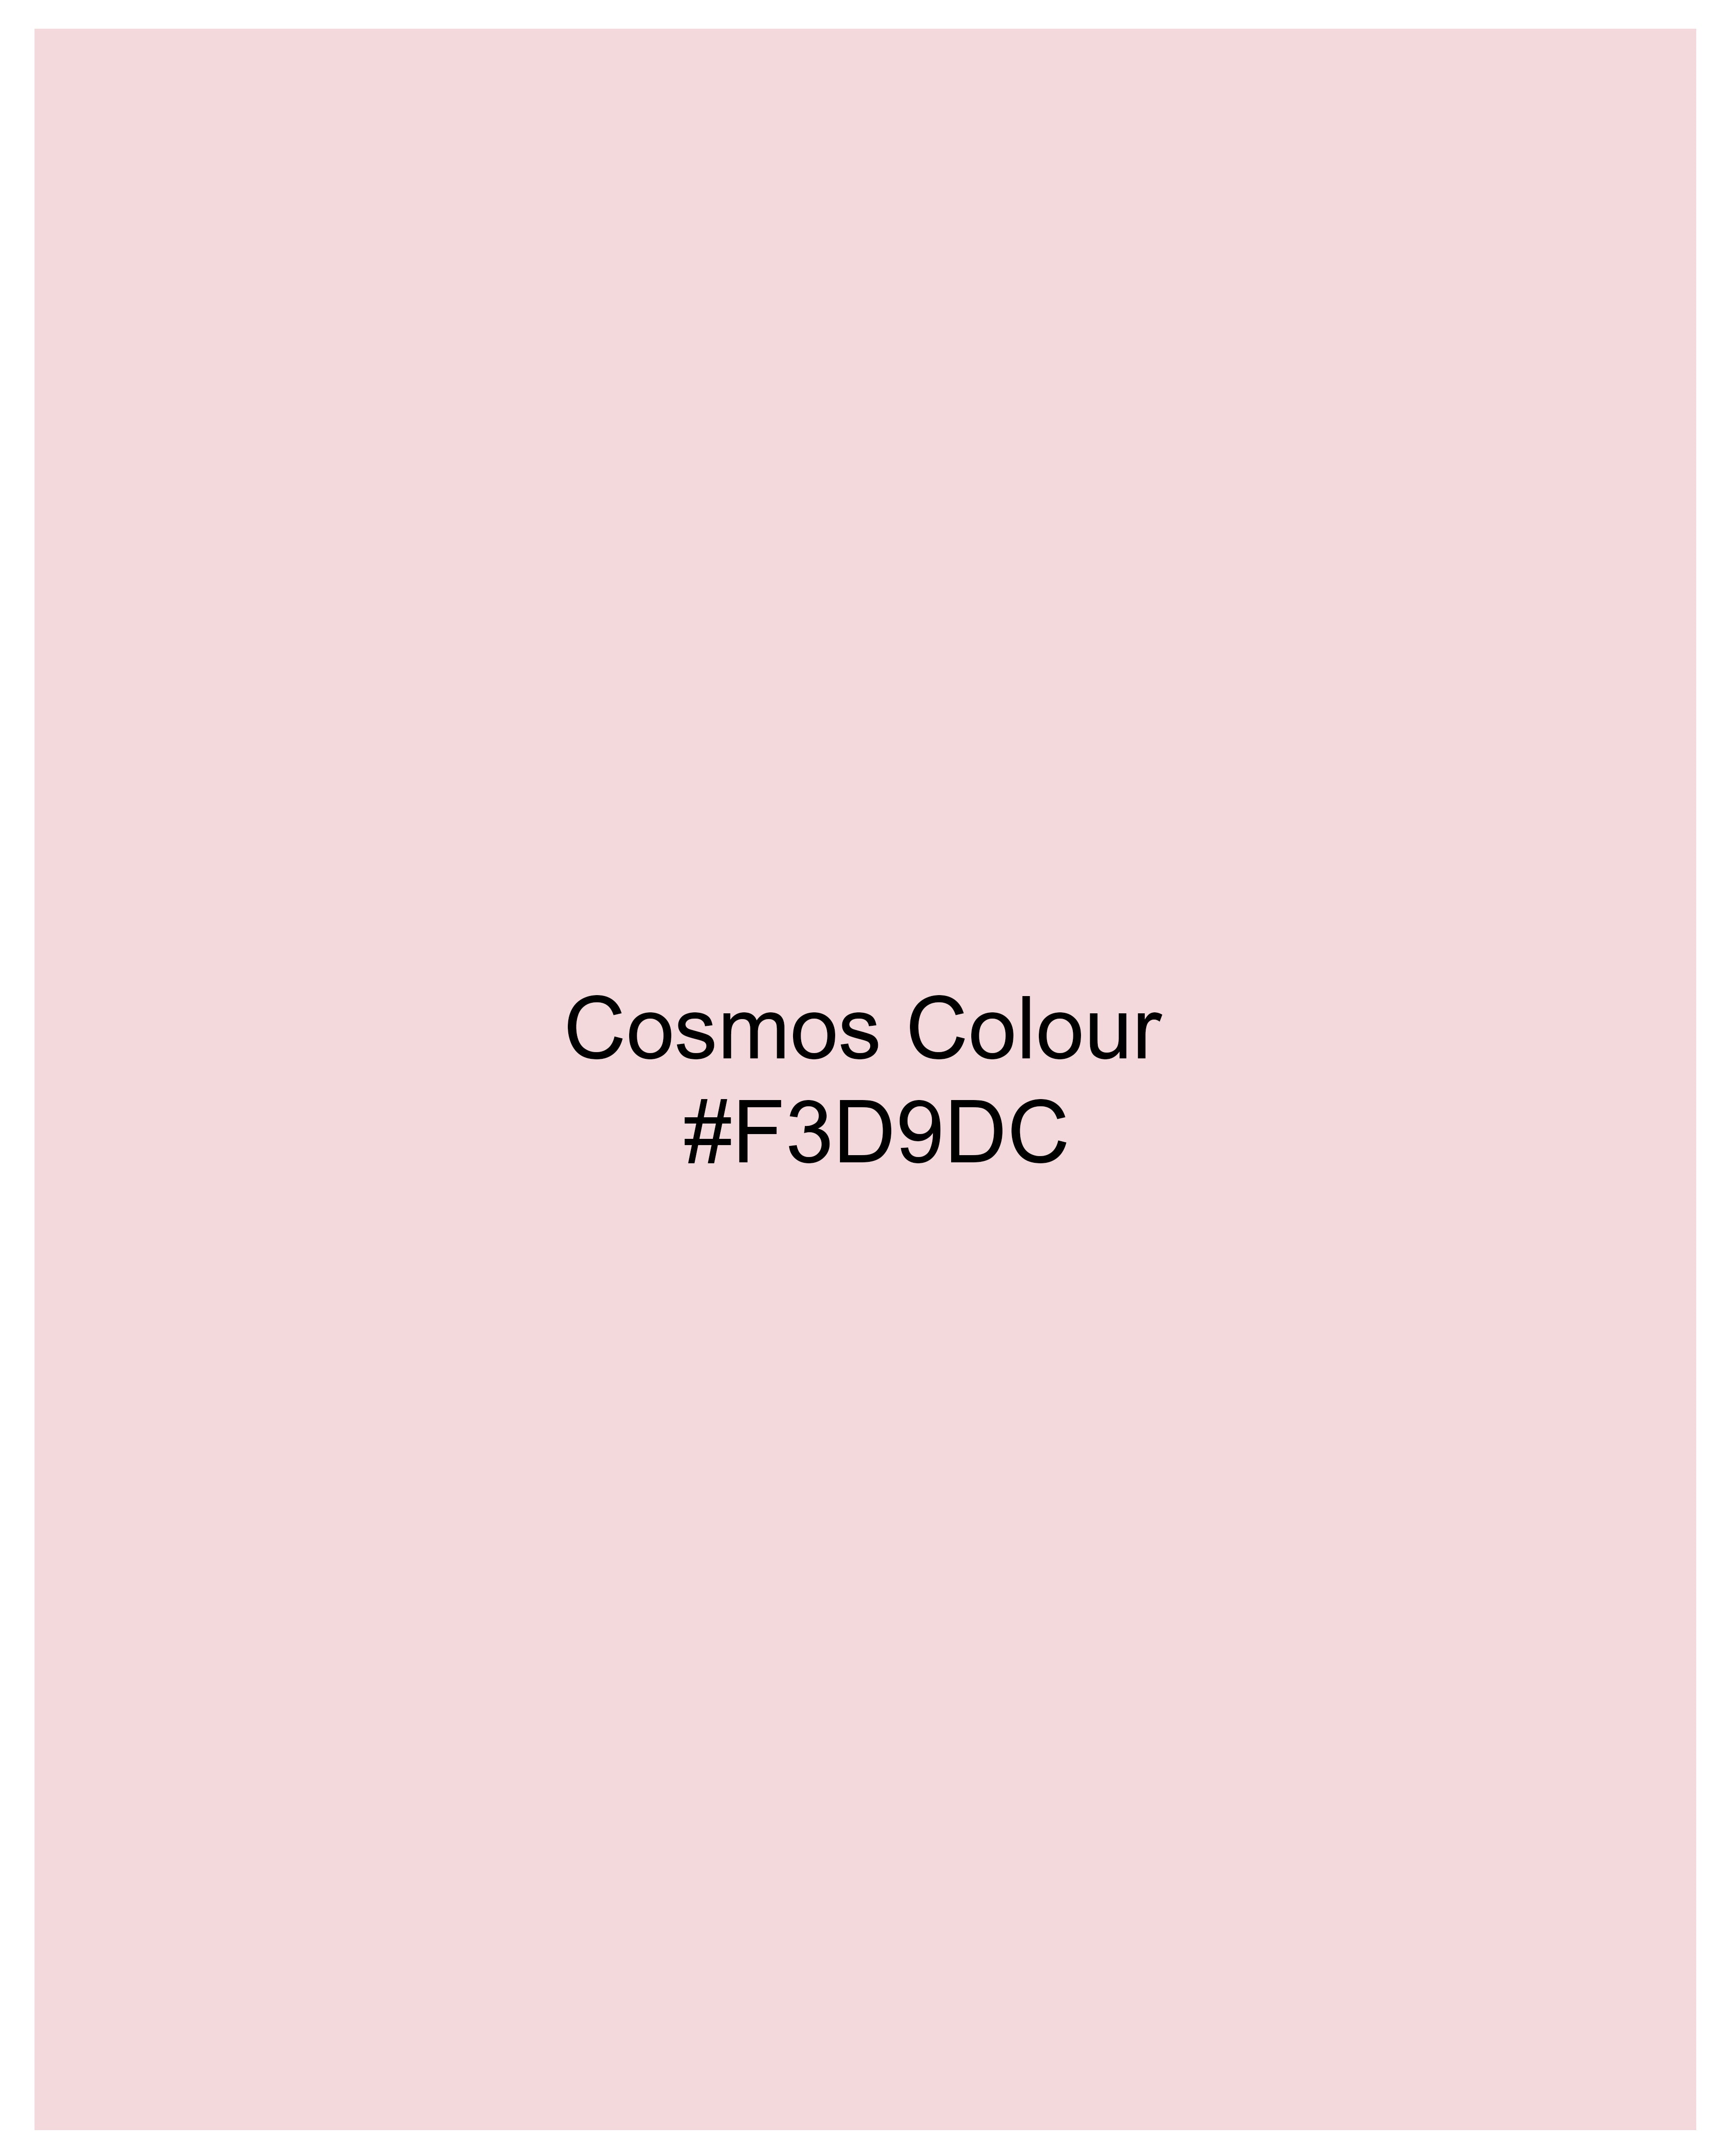 Cosmos Peach Hand Painted Premium Cotton T-Shirt TS414-W03-S, TS414-W03-M, TS414-W03-L, TS414-W03-XL, TS414-W03-XXL